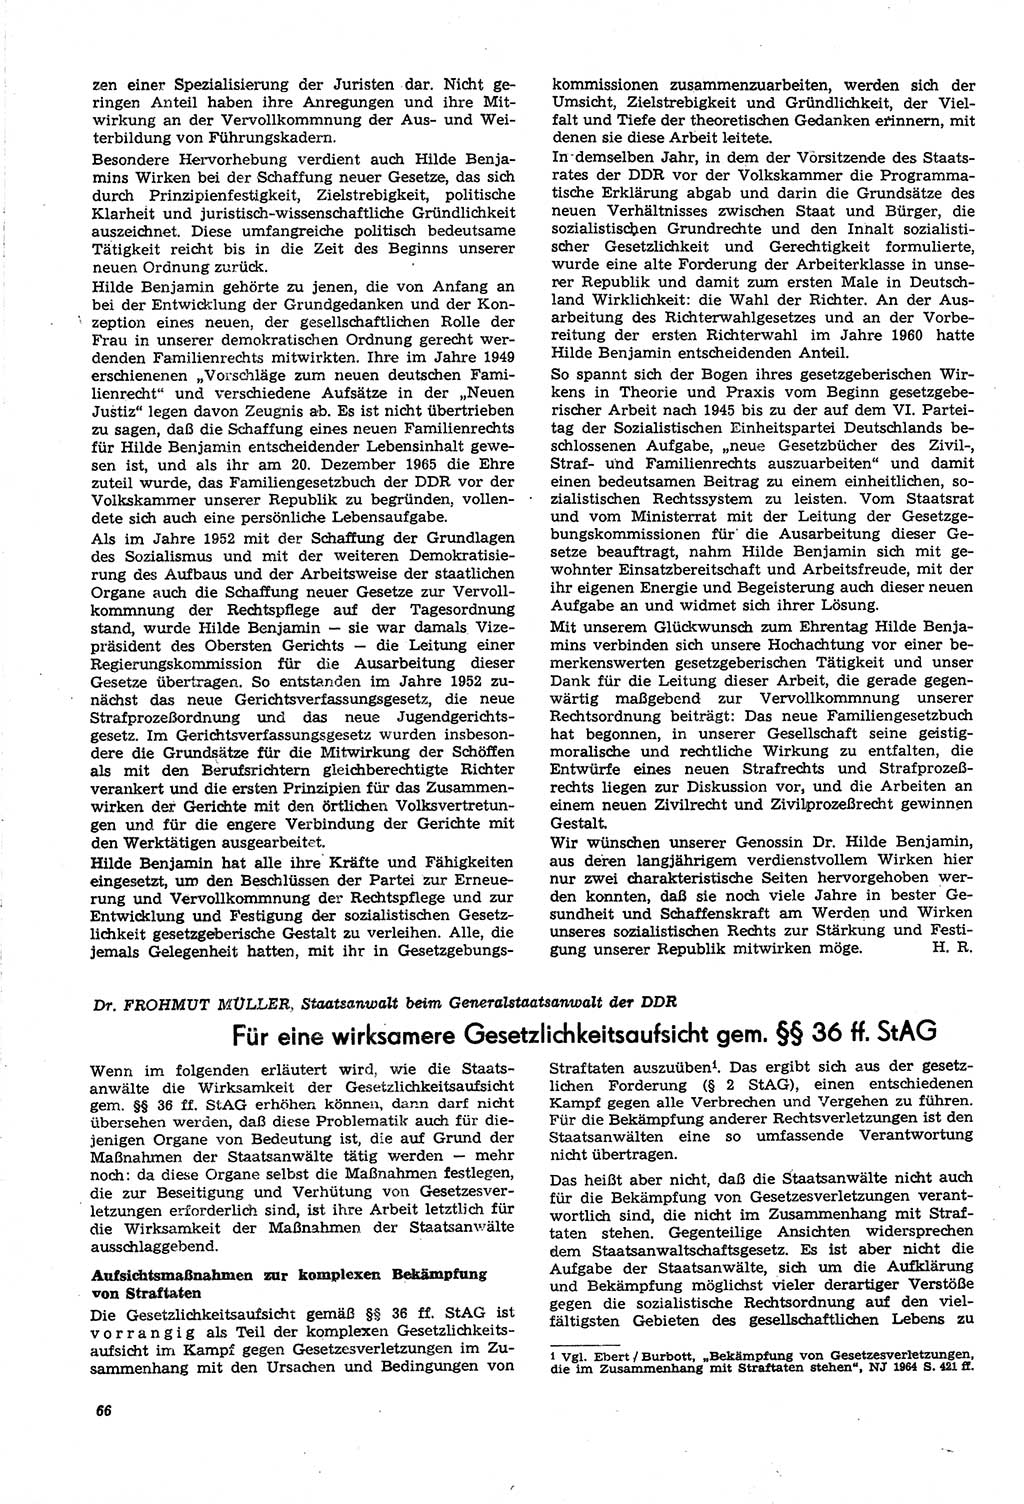 Neue Justiz (NJ), Zeitschrift für Recht und Rechtswissenschaft [Deutsche Demokratische Republik (DDR)], 21. Jahrgang 1967, Seite 66 (NJ DDR 1967, S. 66)